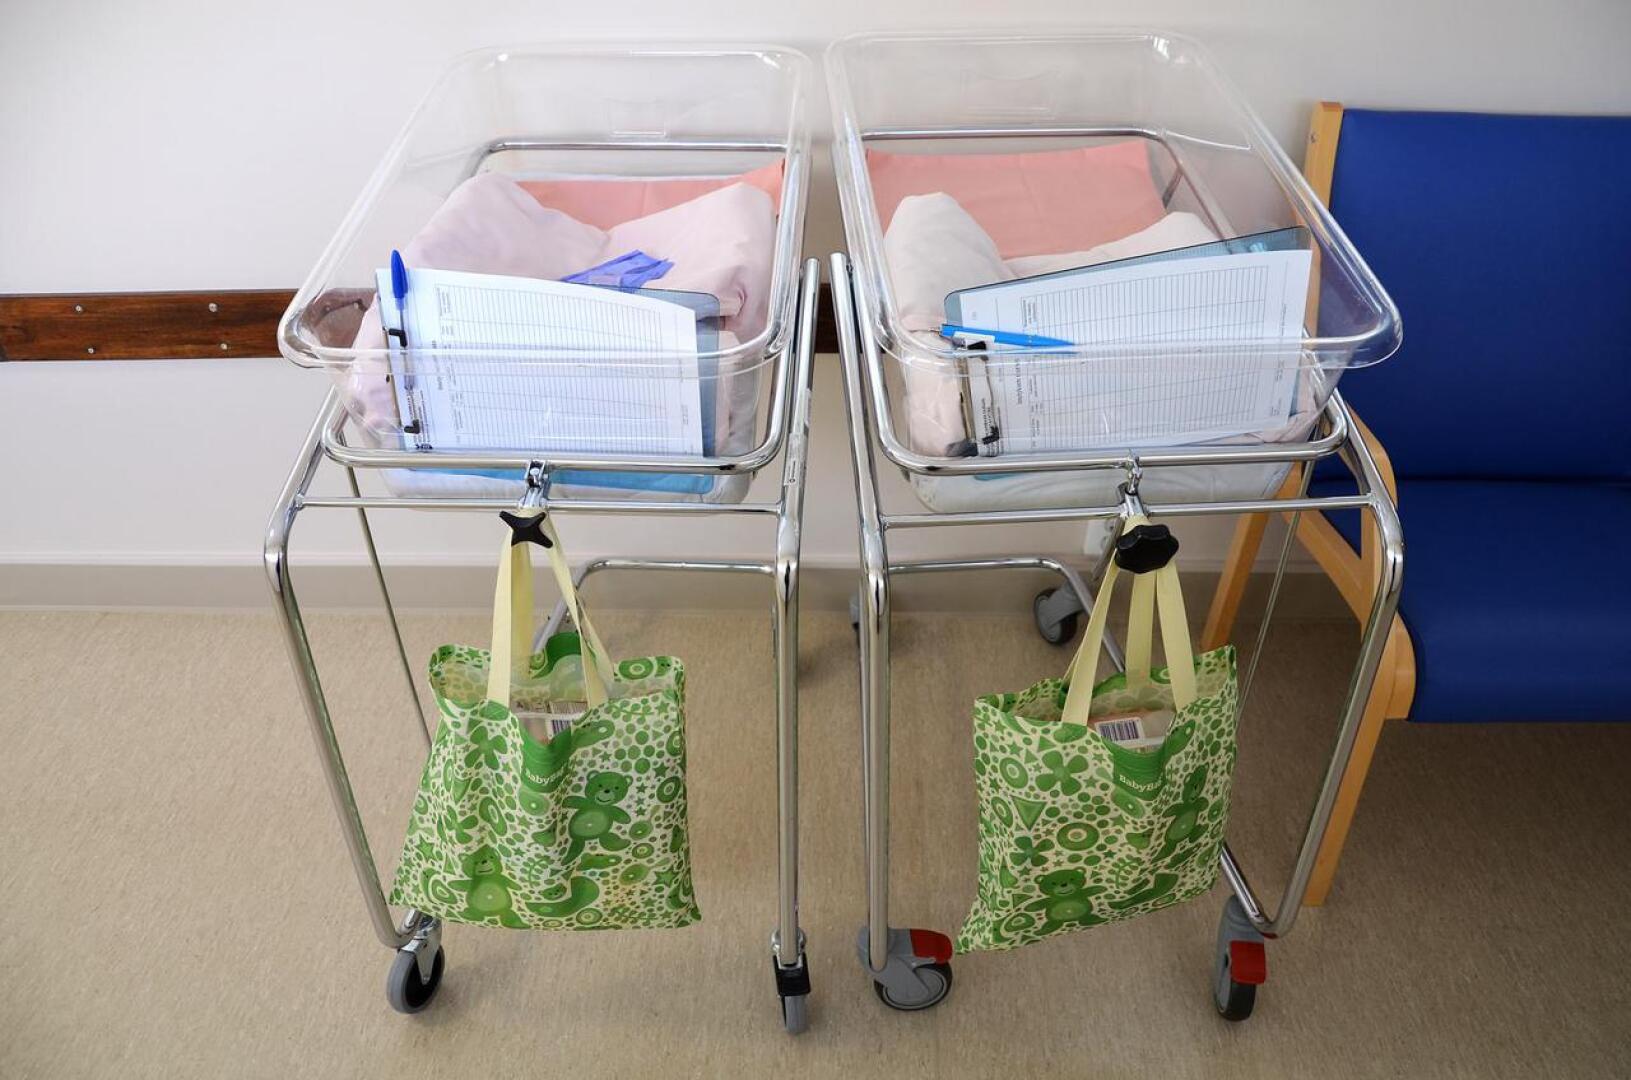 Oulaskankaan sairaalassa ei vähän ajan päästä enää kärrätä vastasyntyneitä.